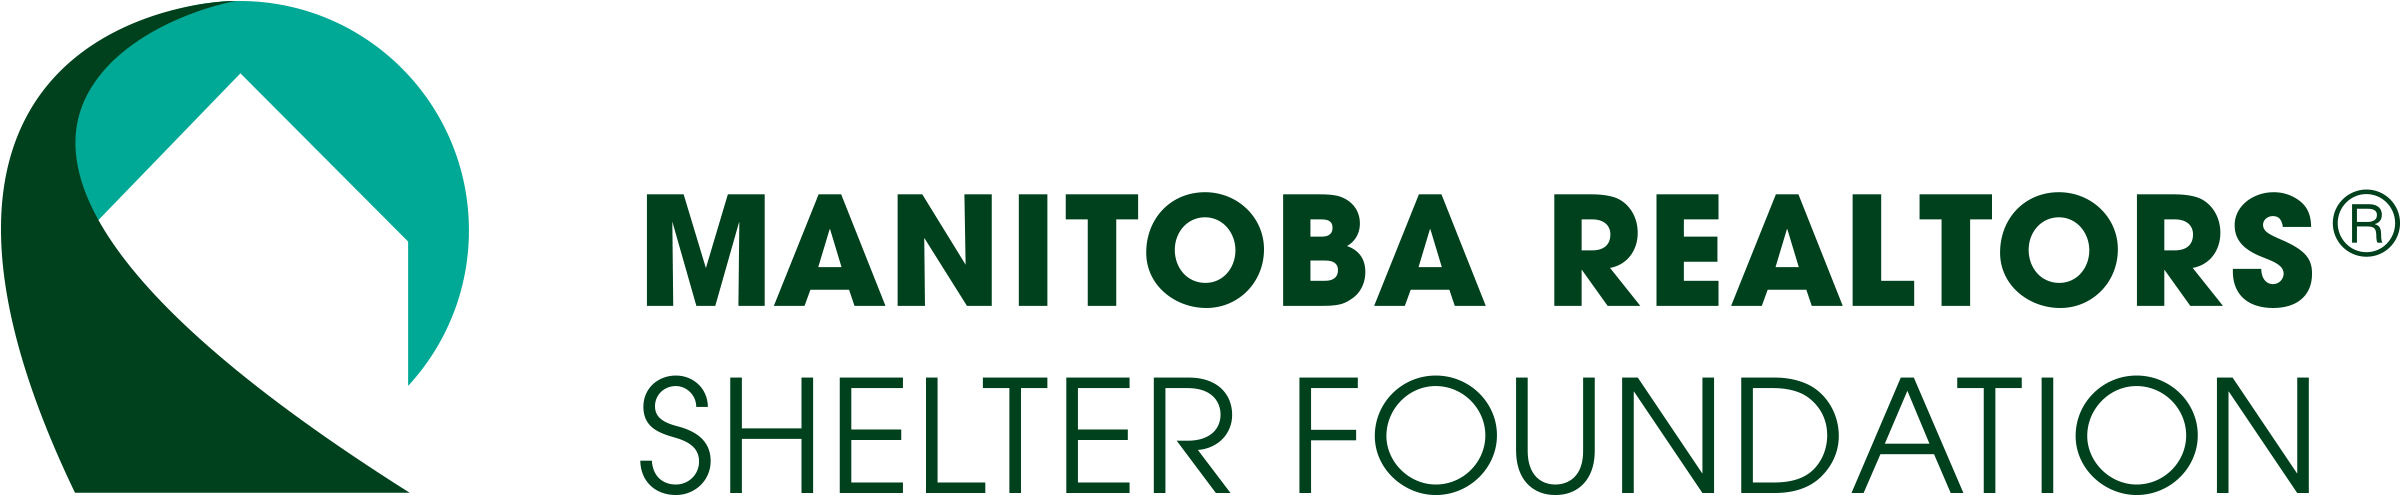 Manitoba REALTORS Shelter Foundation